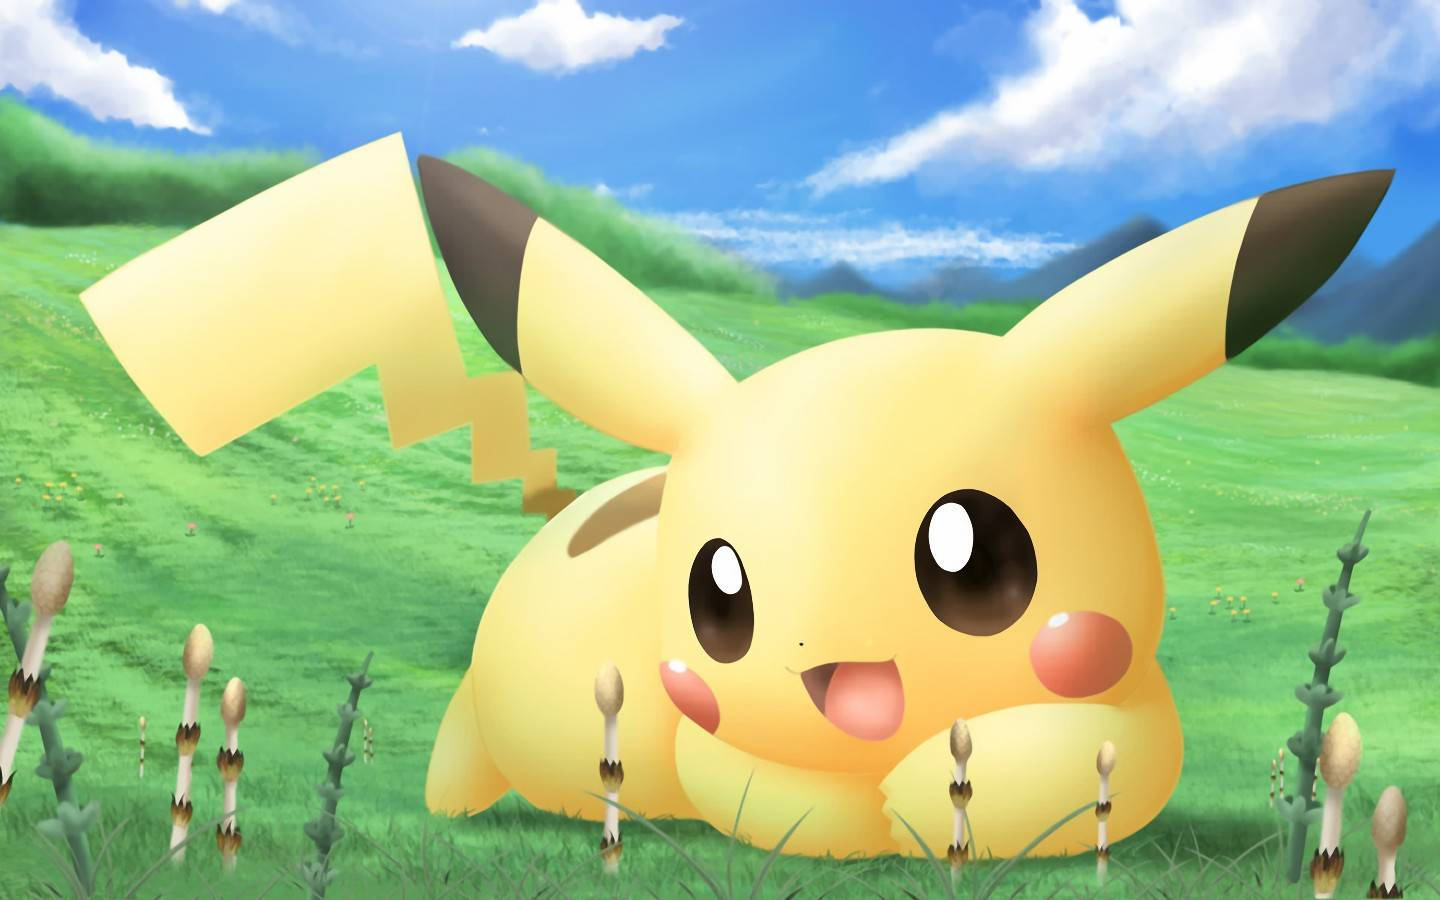 Pikachu 3d Adorable Electric Pokémon